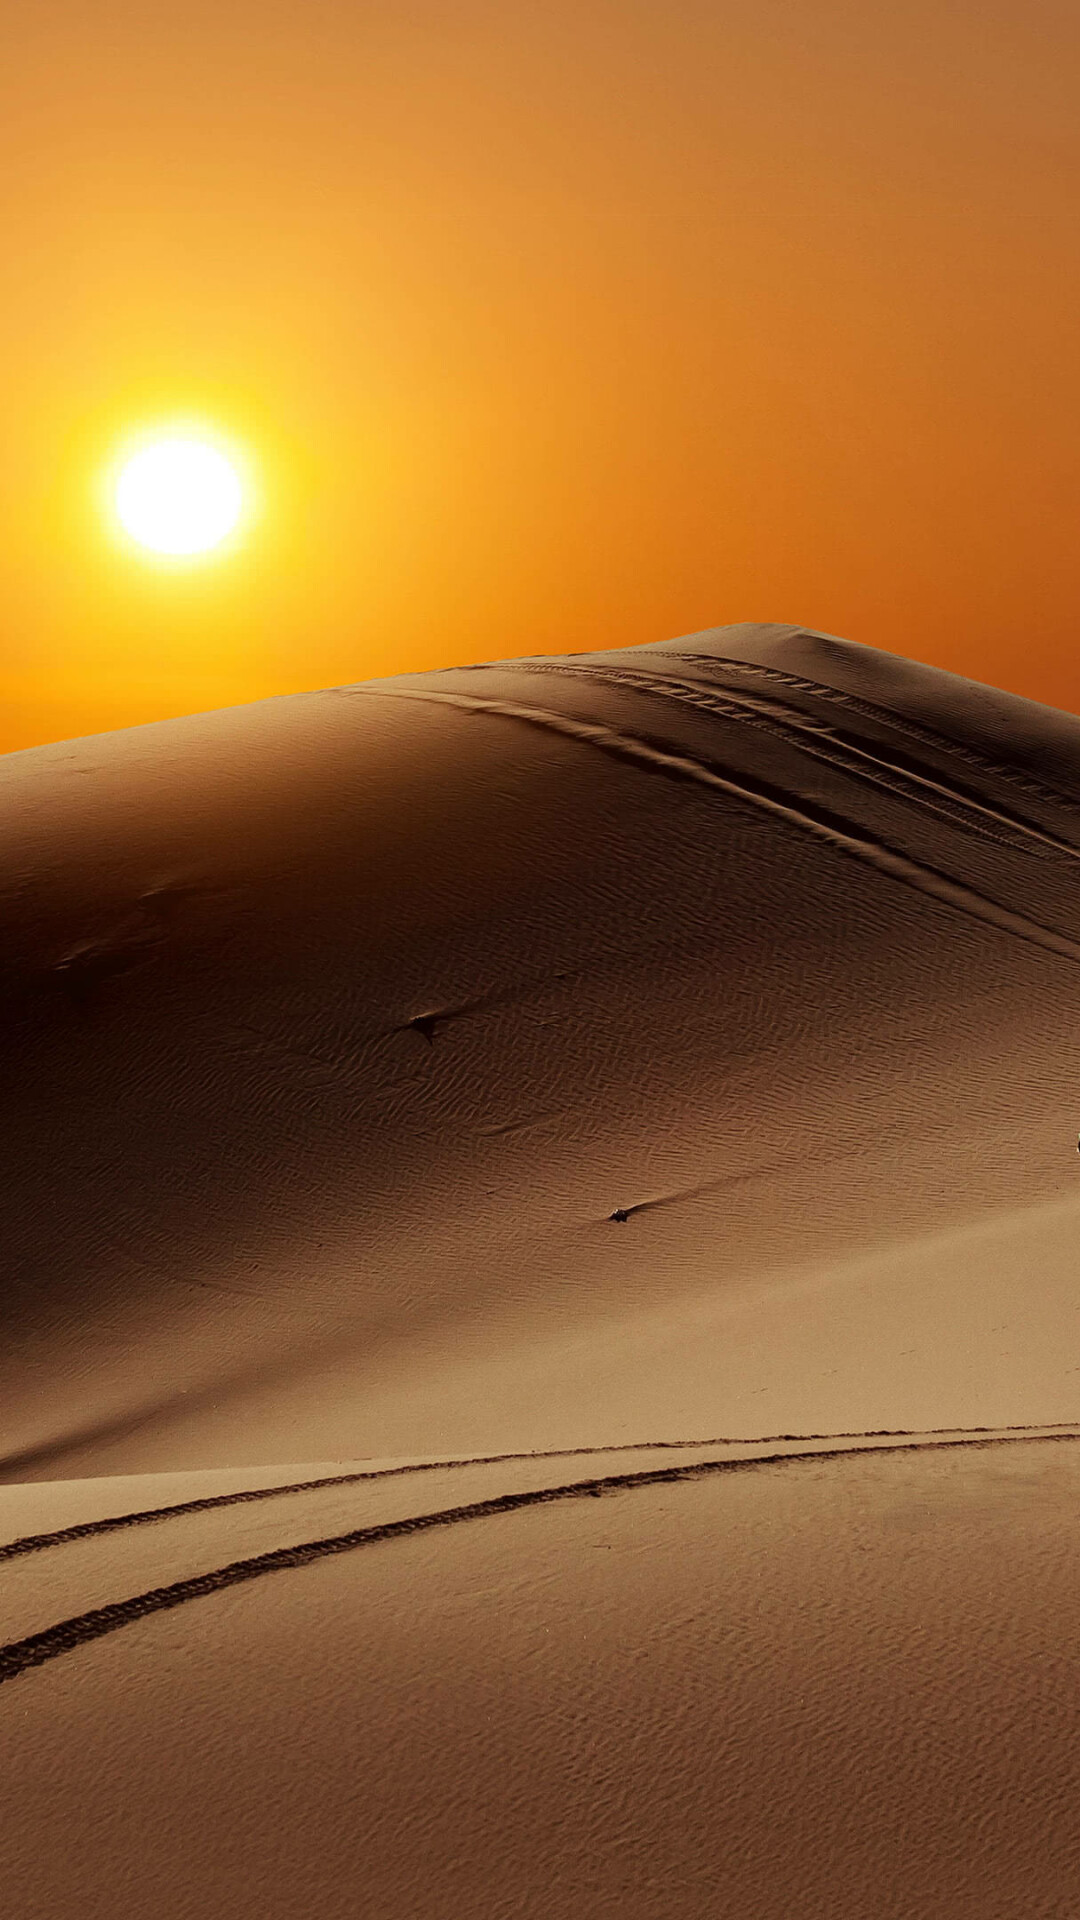 Desert: A large, dry, barren region, usually having sandy or rocky soil and little or no vegetation. 1080x1920 Full HD Wallpaper.